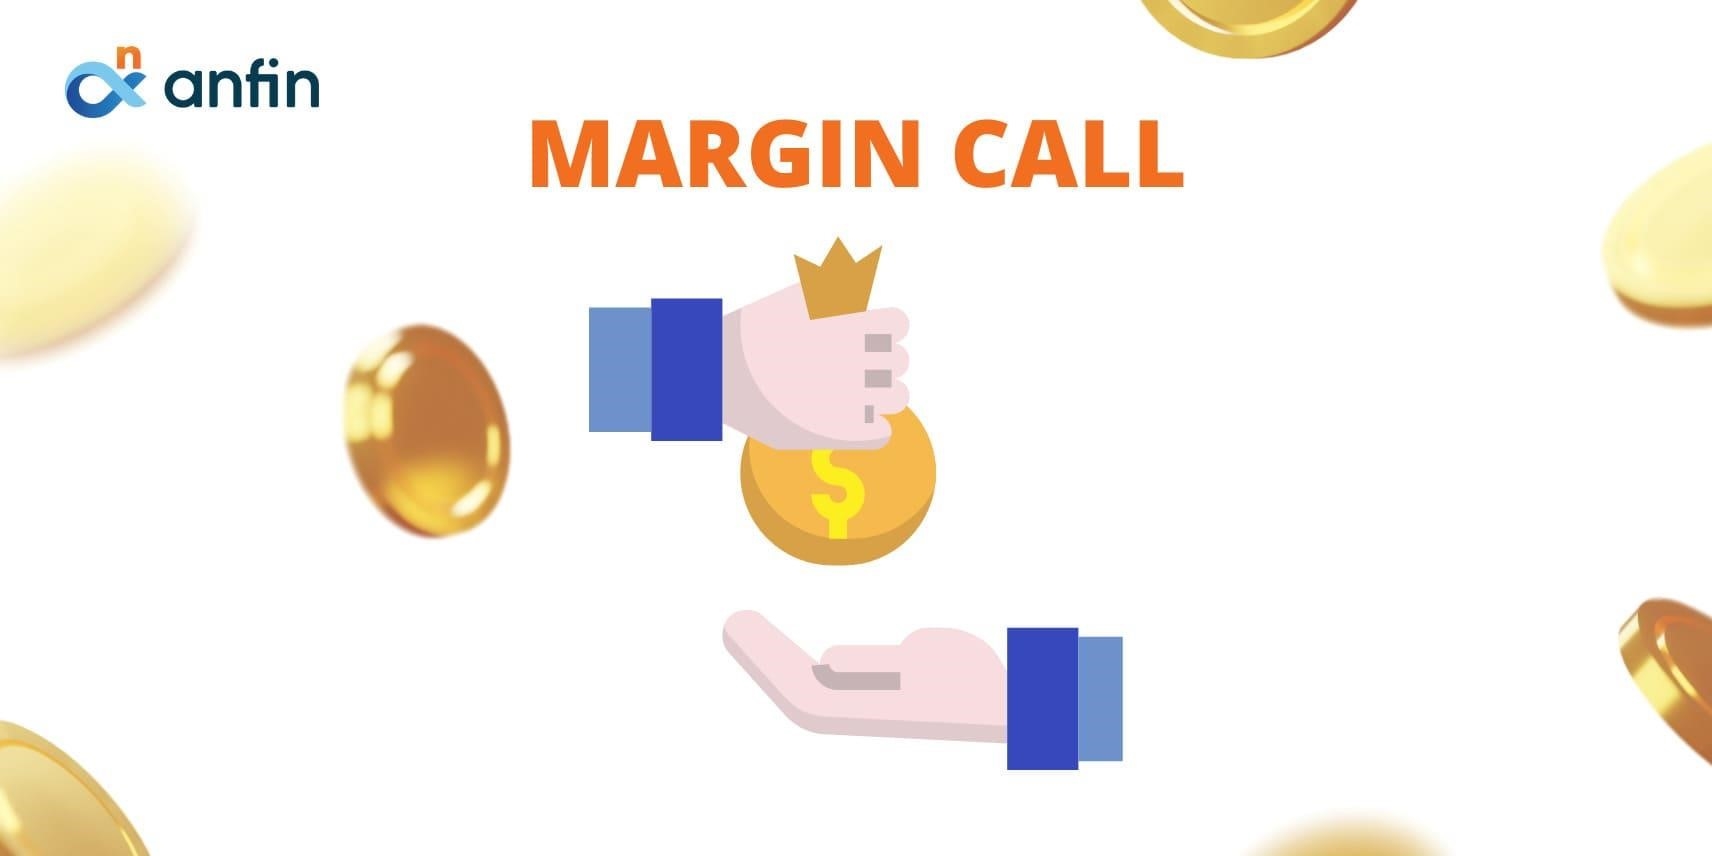 Margin Call là một thuật ngữ trong lĩnh vực tài chính, đề cập đến cuộc gọi bổ sung tiền đặt cọc từ một nhà môi giới đến khách hàng khi giá trị tài sản của khách hàng giảm đến mức không đủ để đảm bảo các khoản vay hoặc các giao dịch ký quỹ.